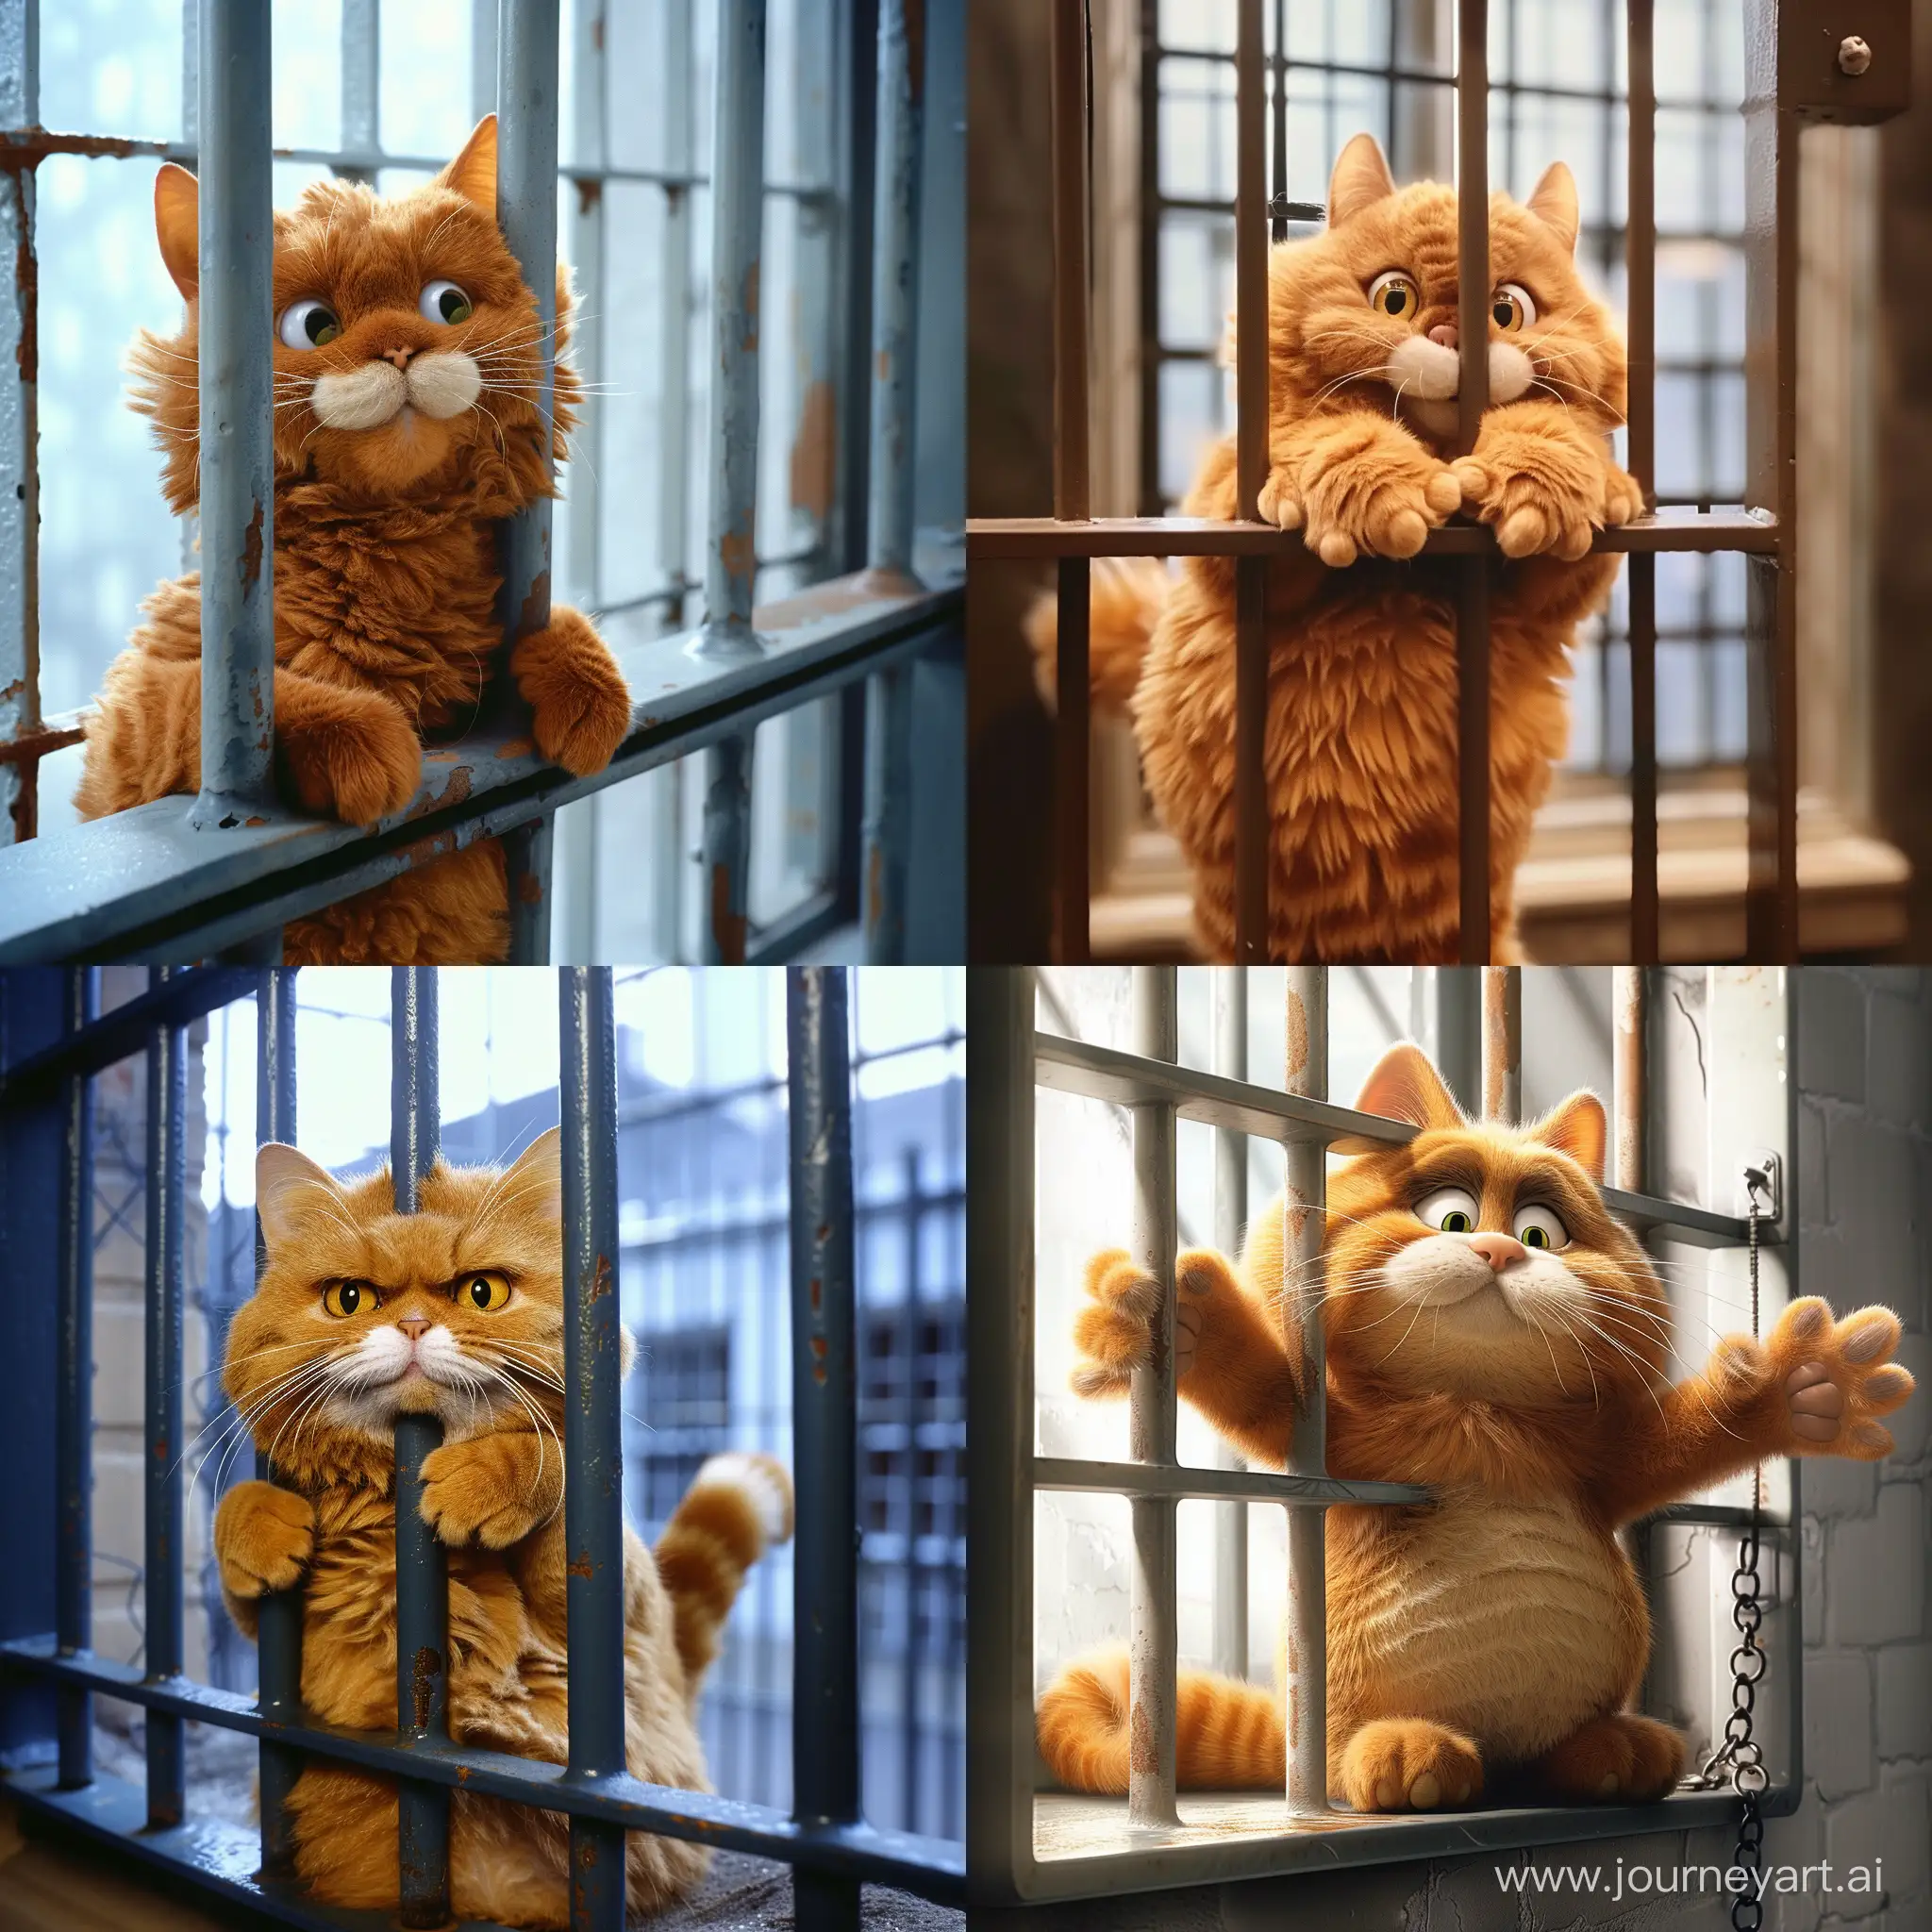 Жирный  кот Гарфилд пытается сбежать из тюрьмы через окно